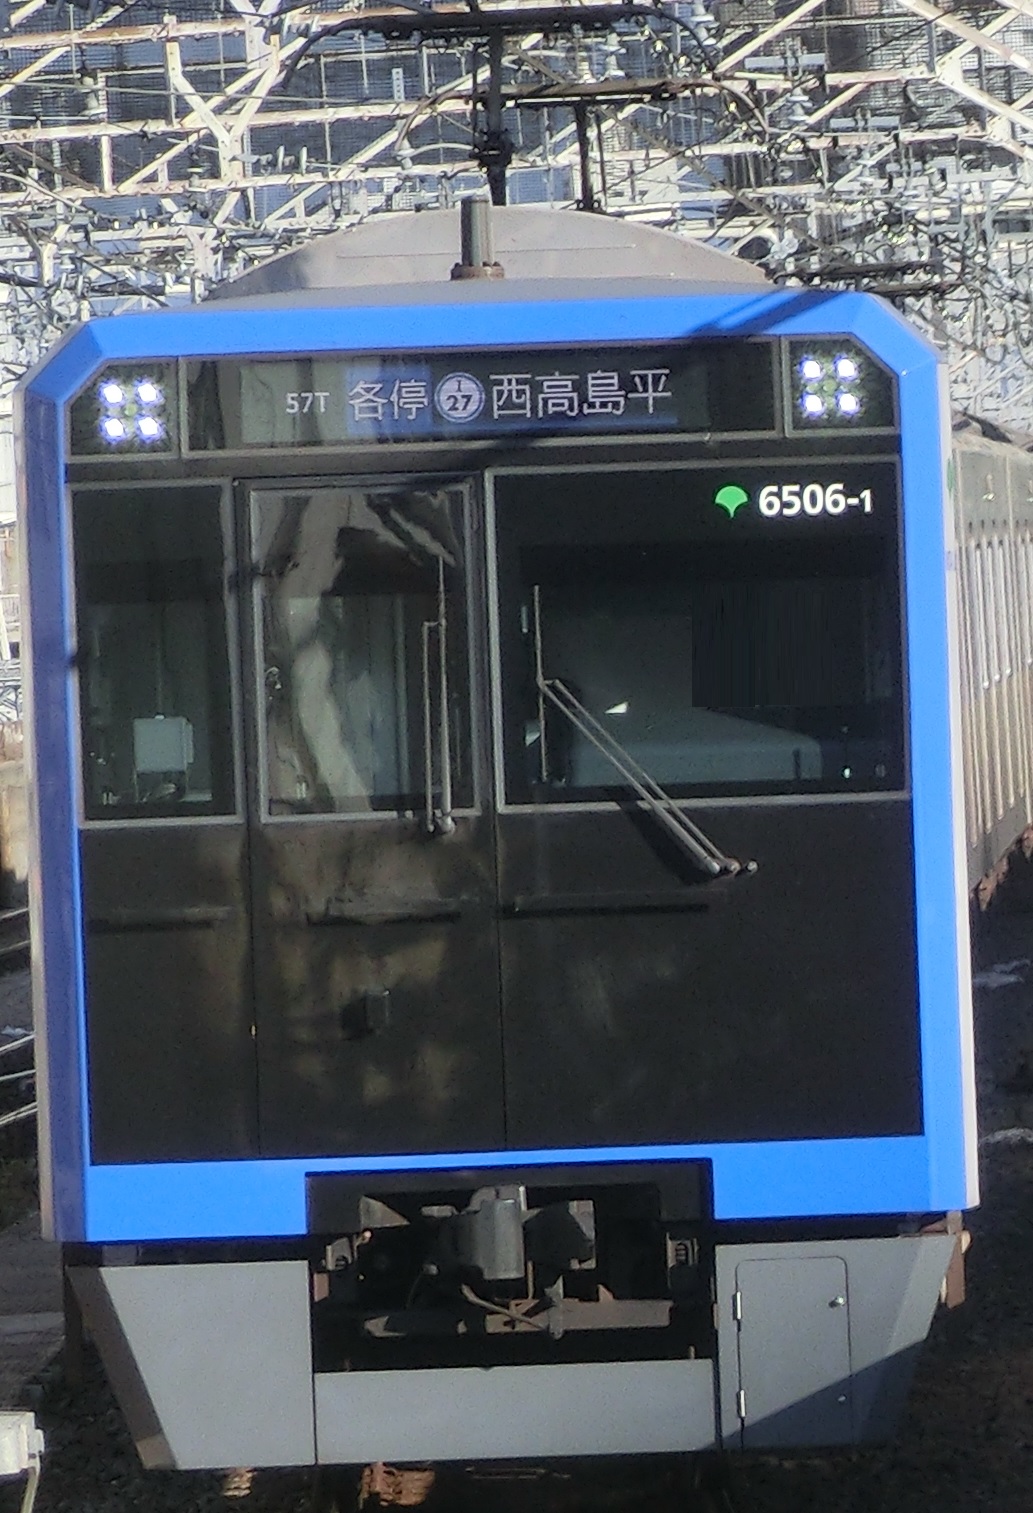 tokyo6506-2.jpg